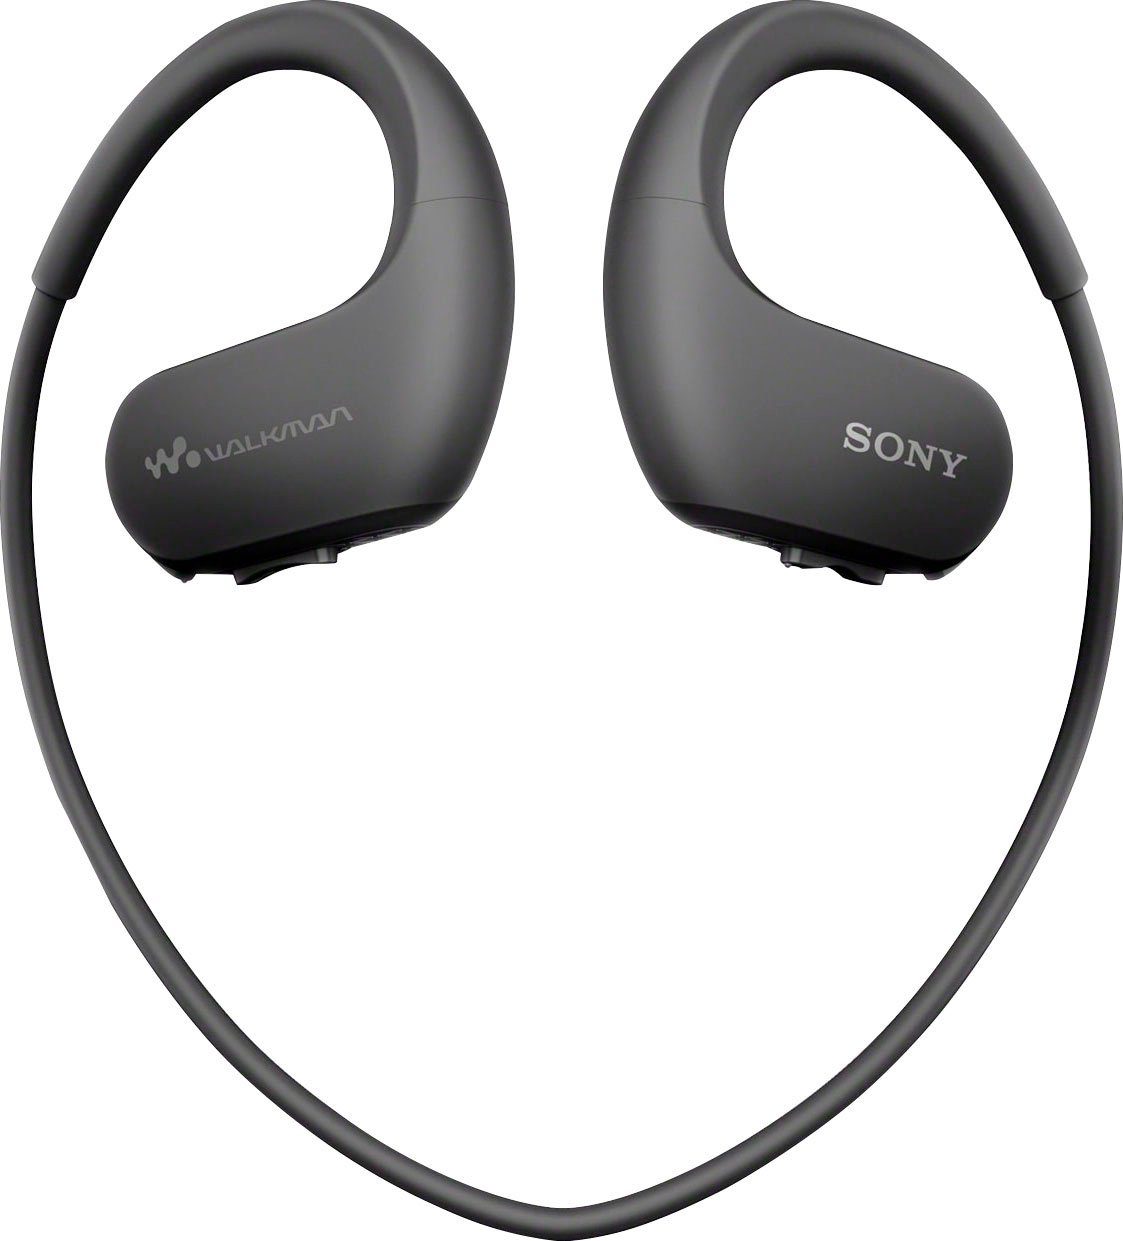 preisvergleichsstudien Sony NW-WS413 MP3-Player (4 GB) schwarz